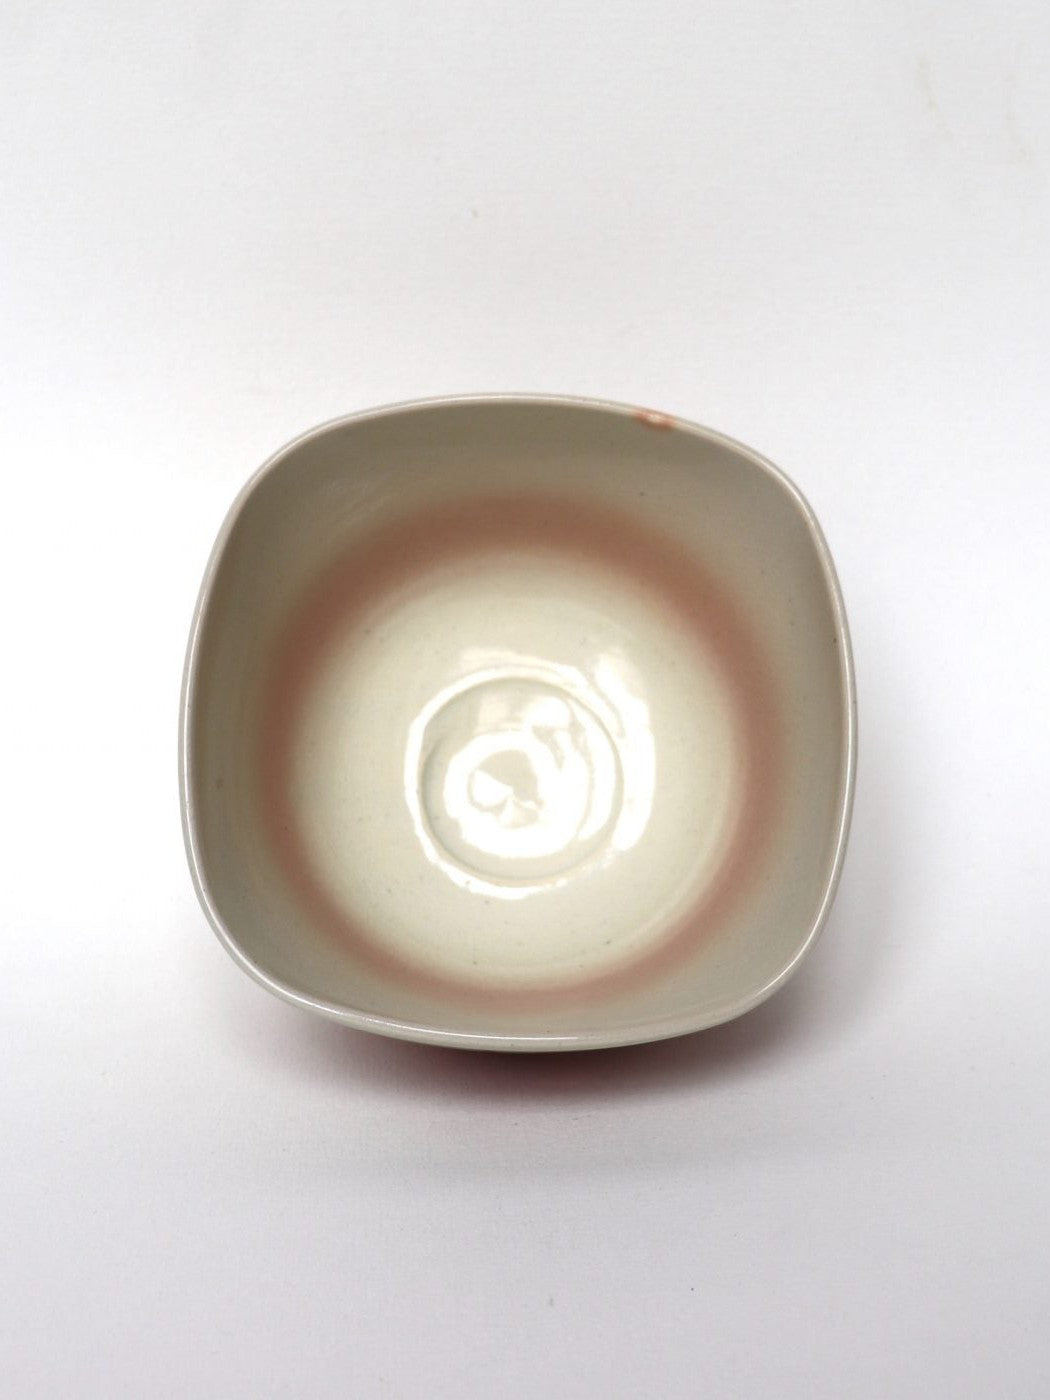 Matcha bowl / "Momiji" Kyo-yaki